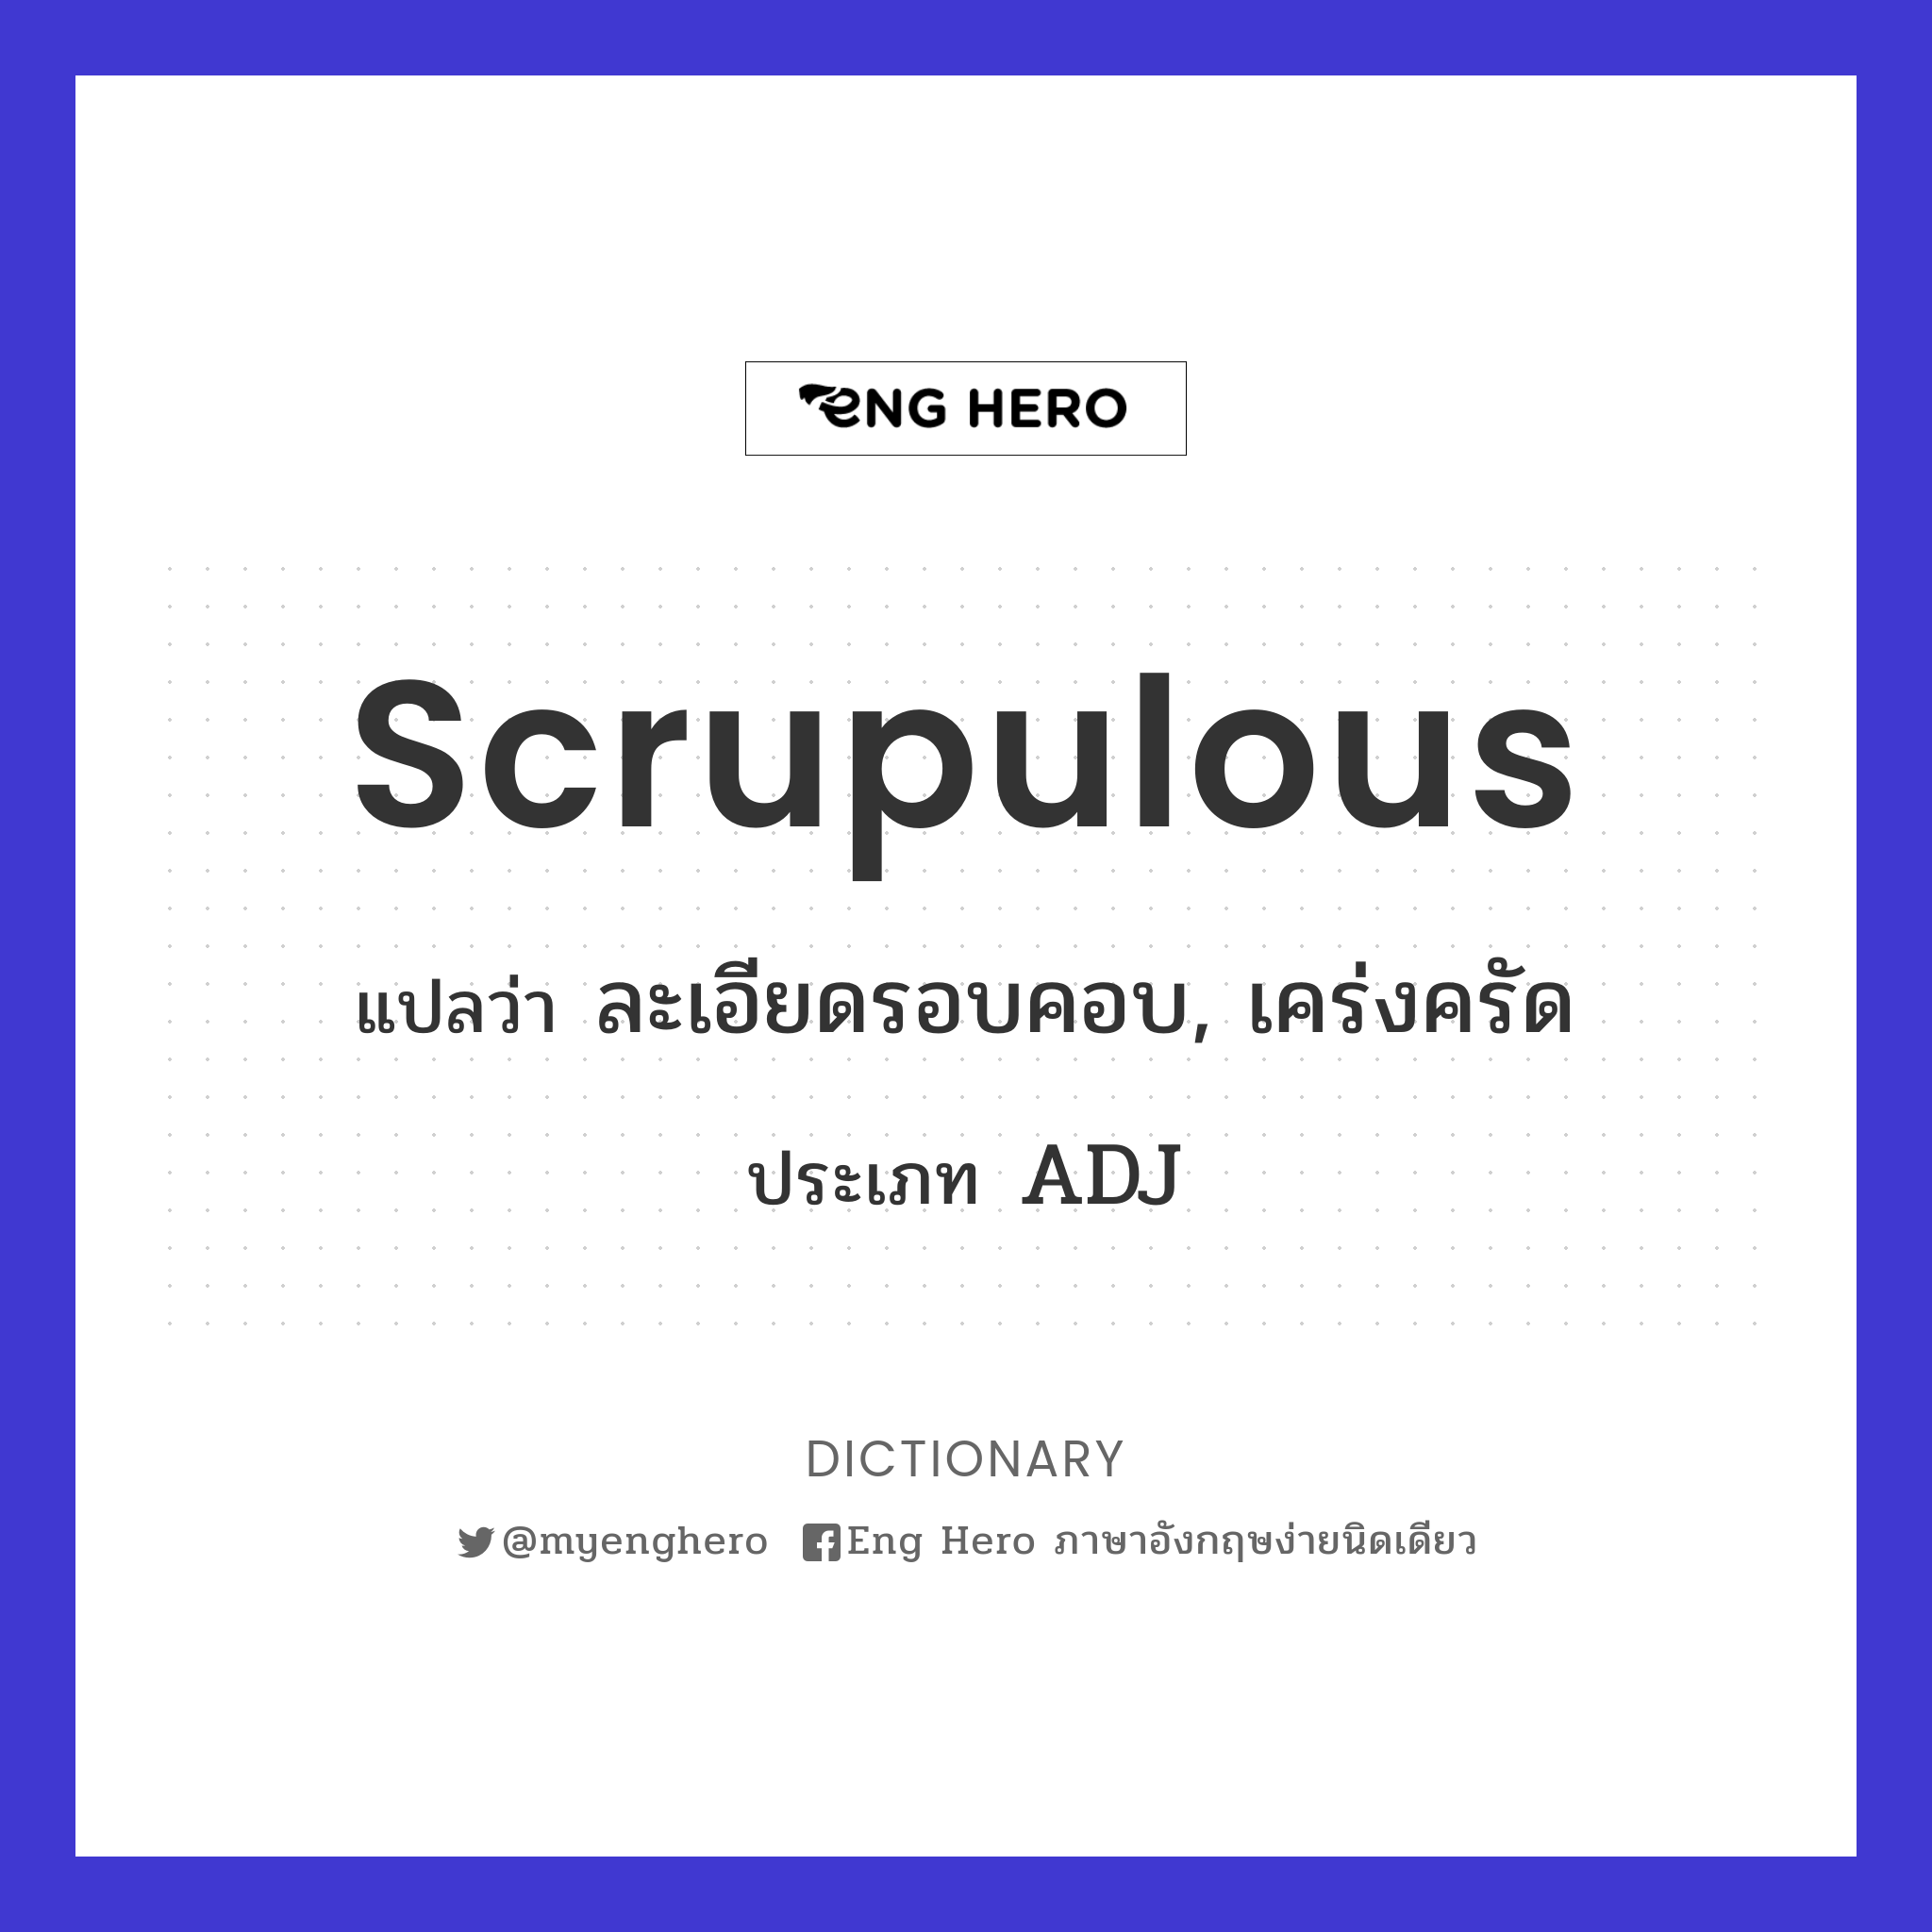 Scrupulous แปลว่า ละเอียดรอบคอบ, เคร่งครัด | Eng Hero เรียนภาษาอังกฤษ  ออนไลน์ ฟรี